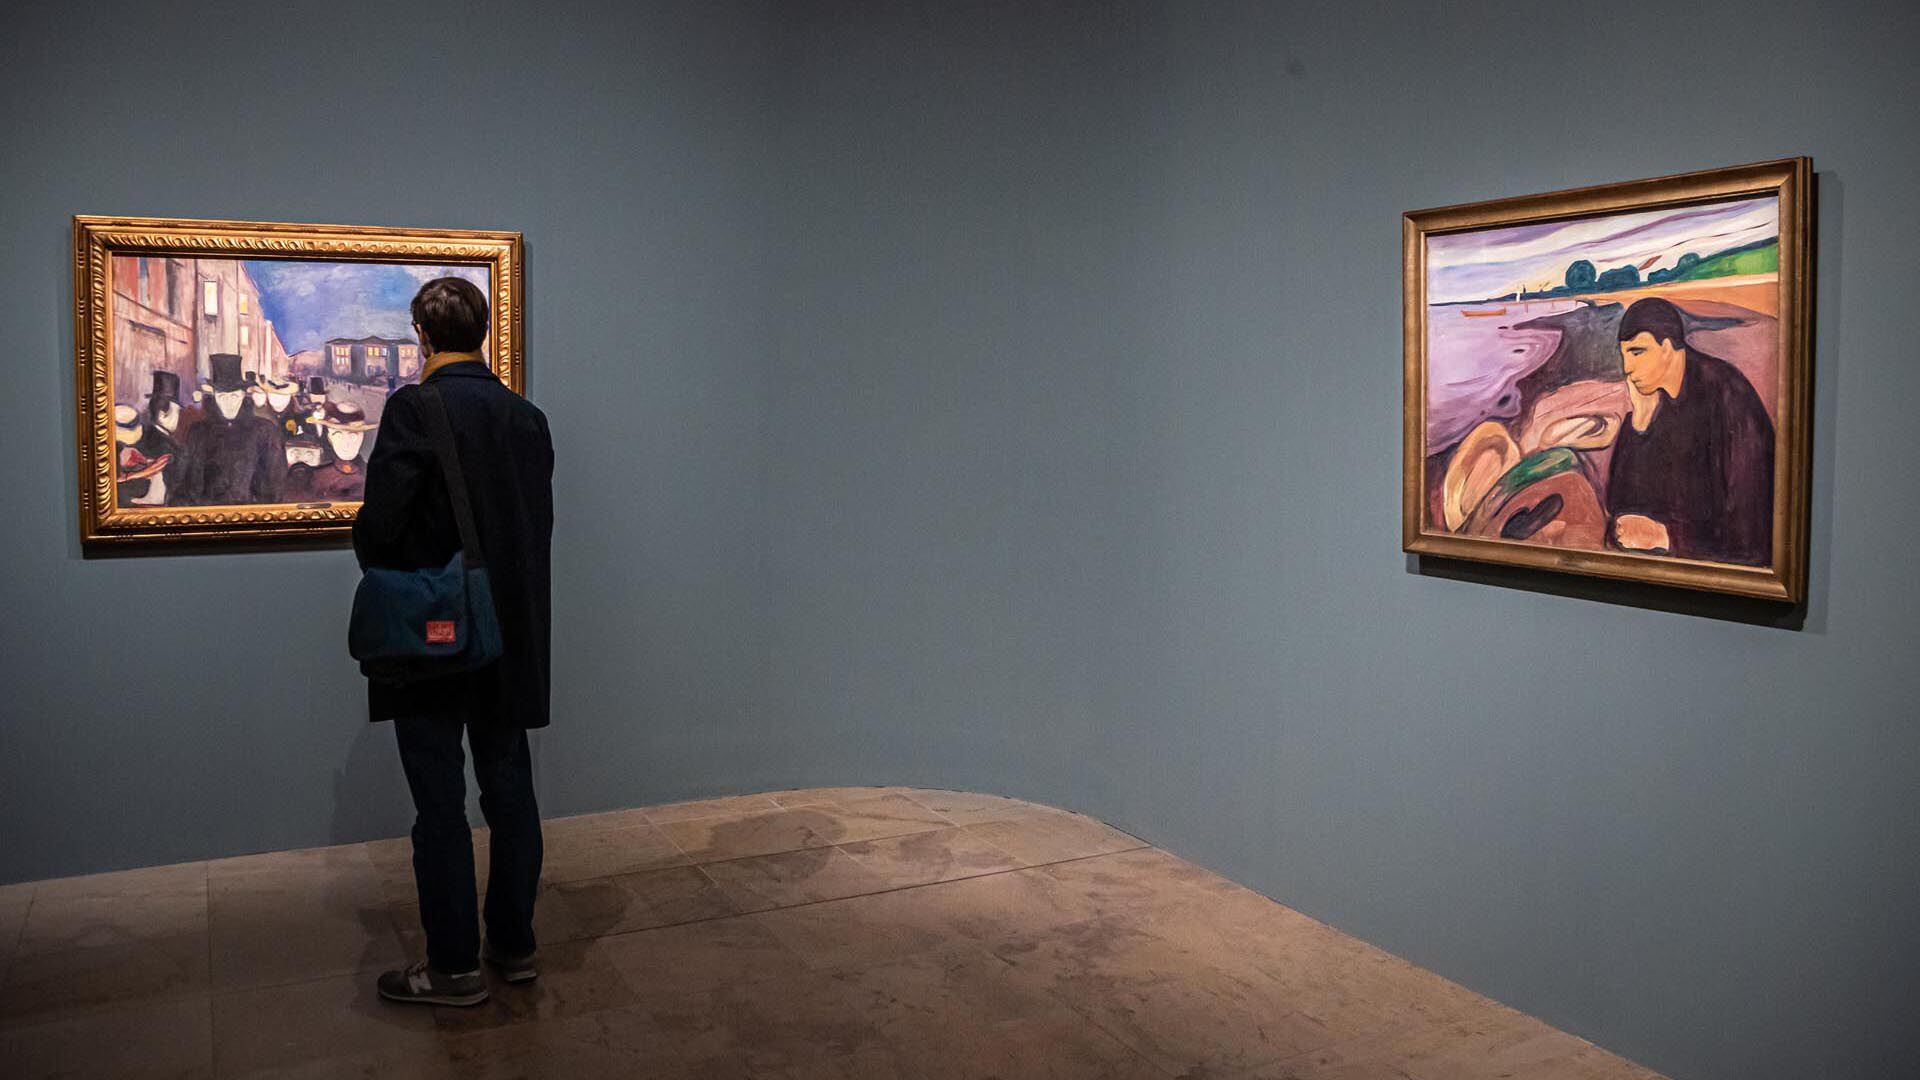 Muestra "Un poema de vida, amor y muerte", de Edvard Munch en el Museo de Orsay de París